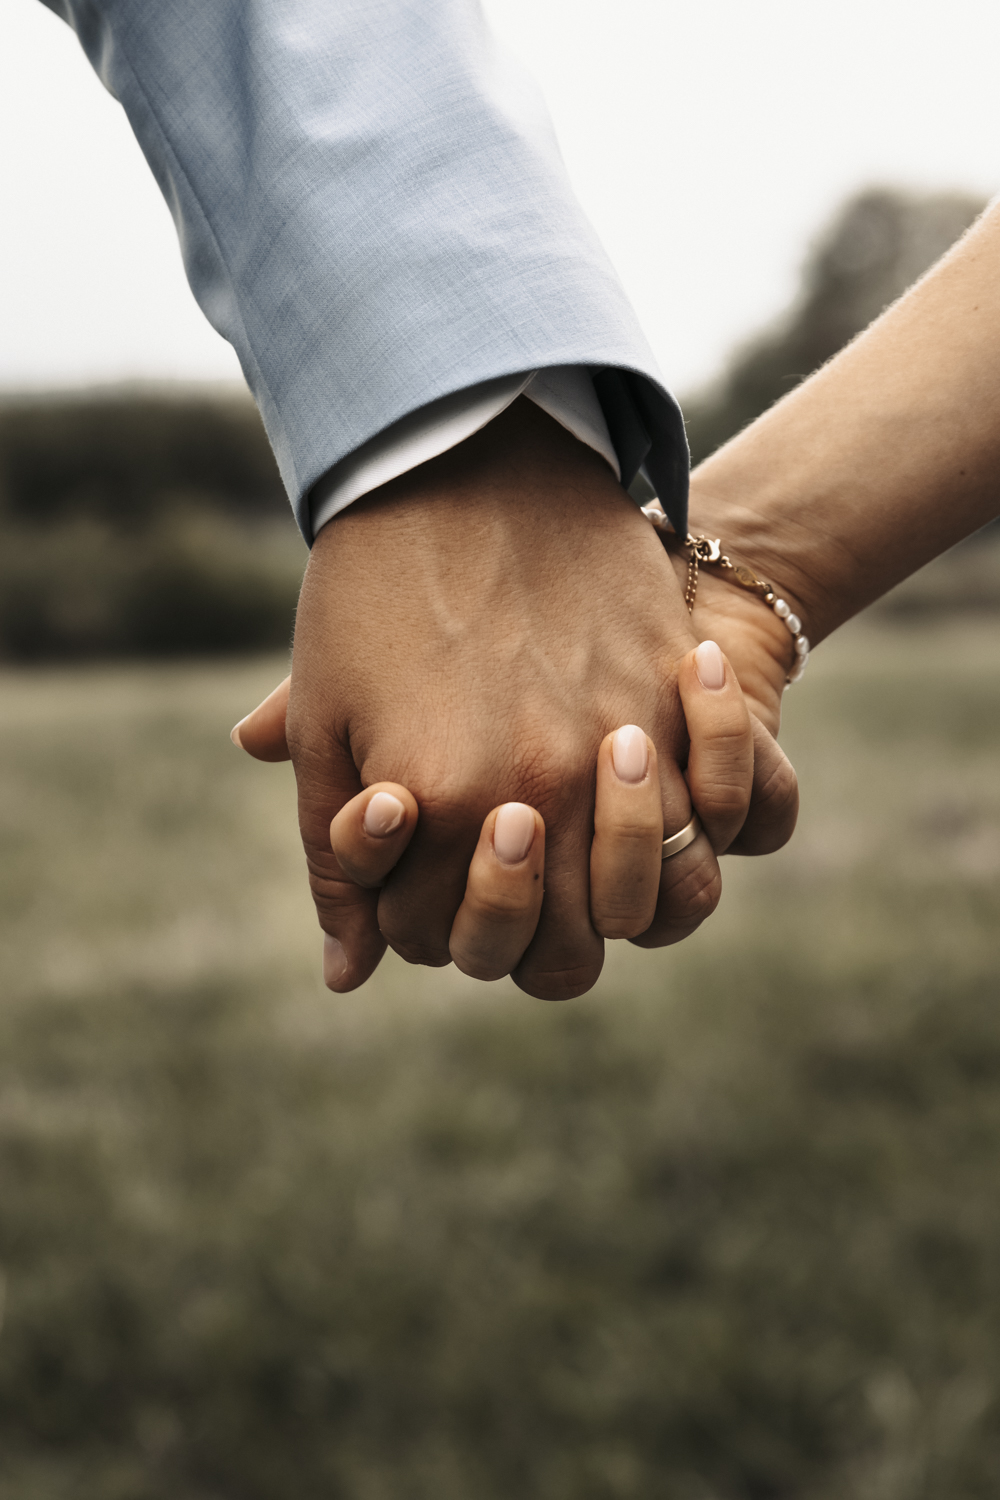 Nahaufnahme der Hände des Brautpaares, sie halten sich fest gegenseitig und zeigen damit ihr Zeichen der Verbundenheit